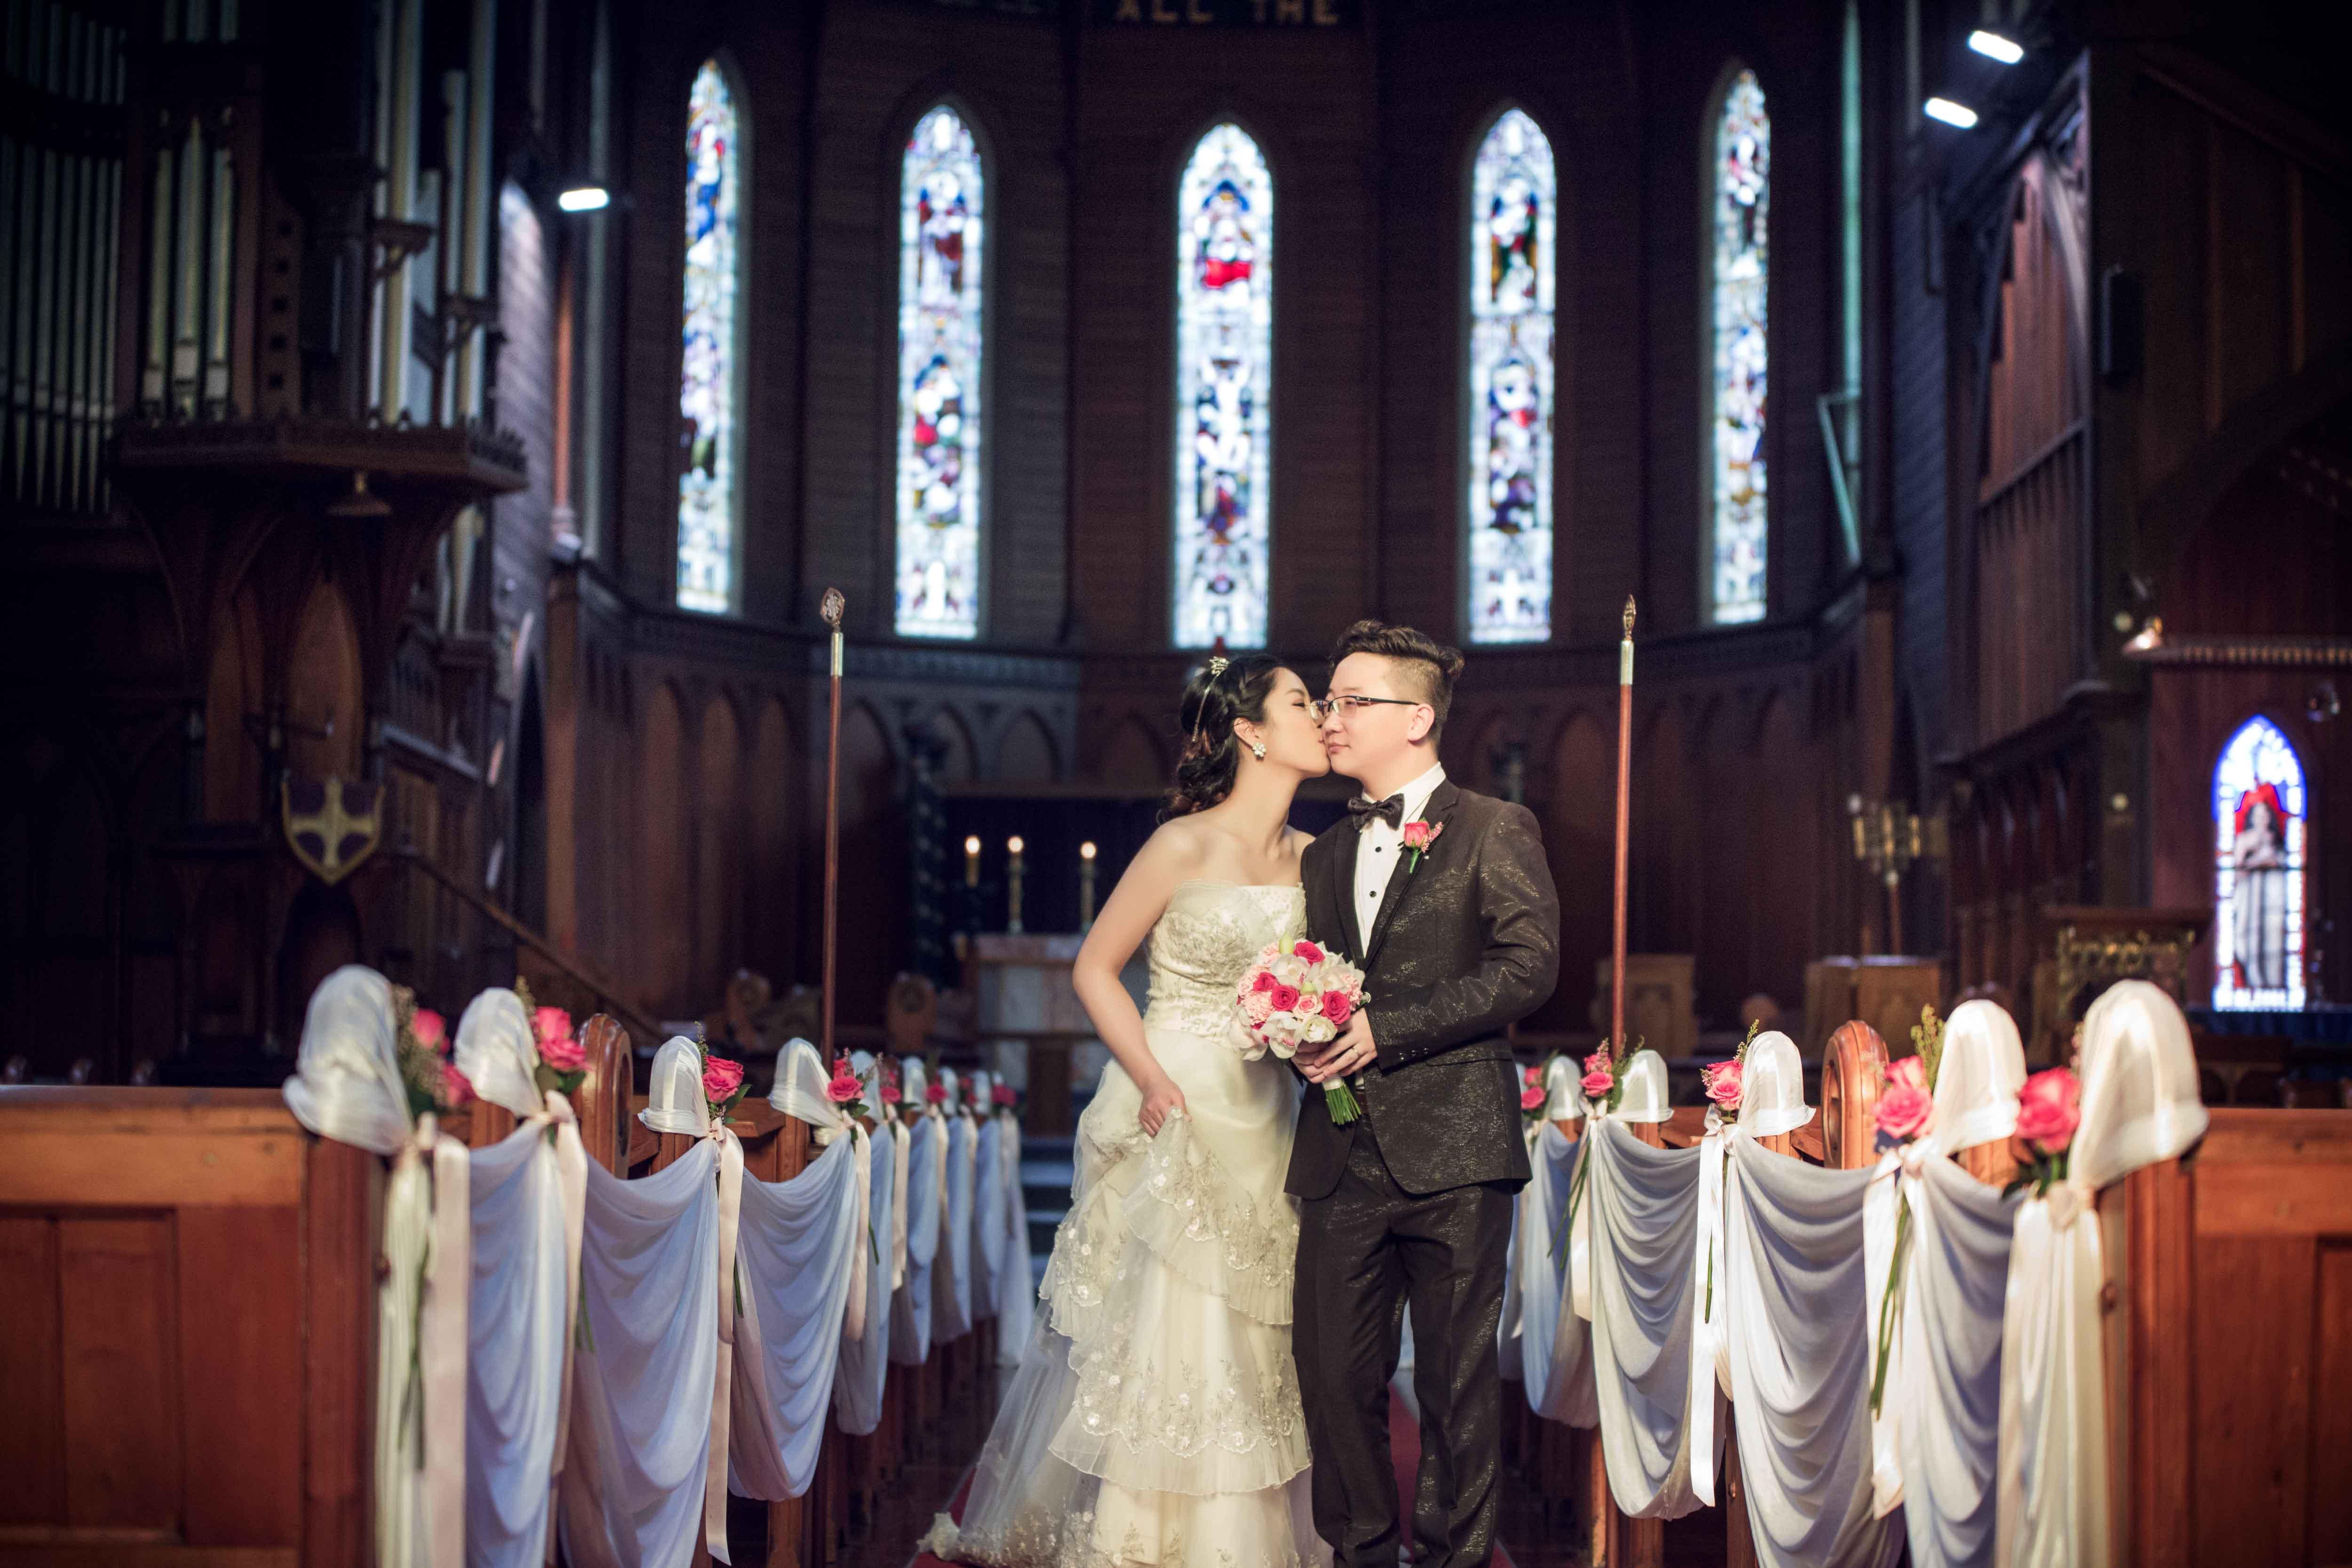 教堂婚礼堂的布置和流程_婚纱摄影_旅行结婚_婚庆策划公司_蜜月时光